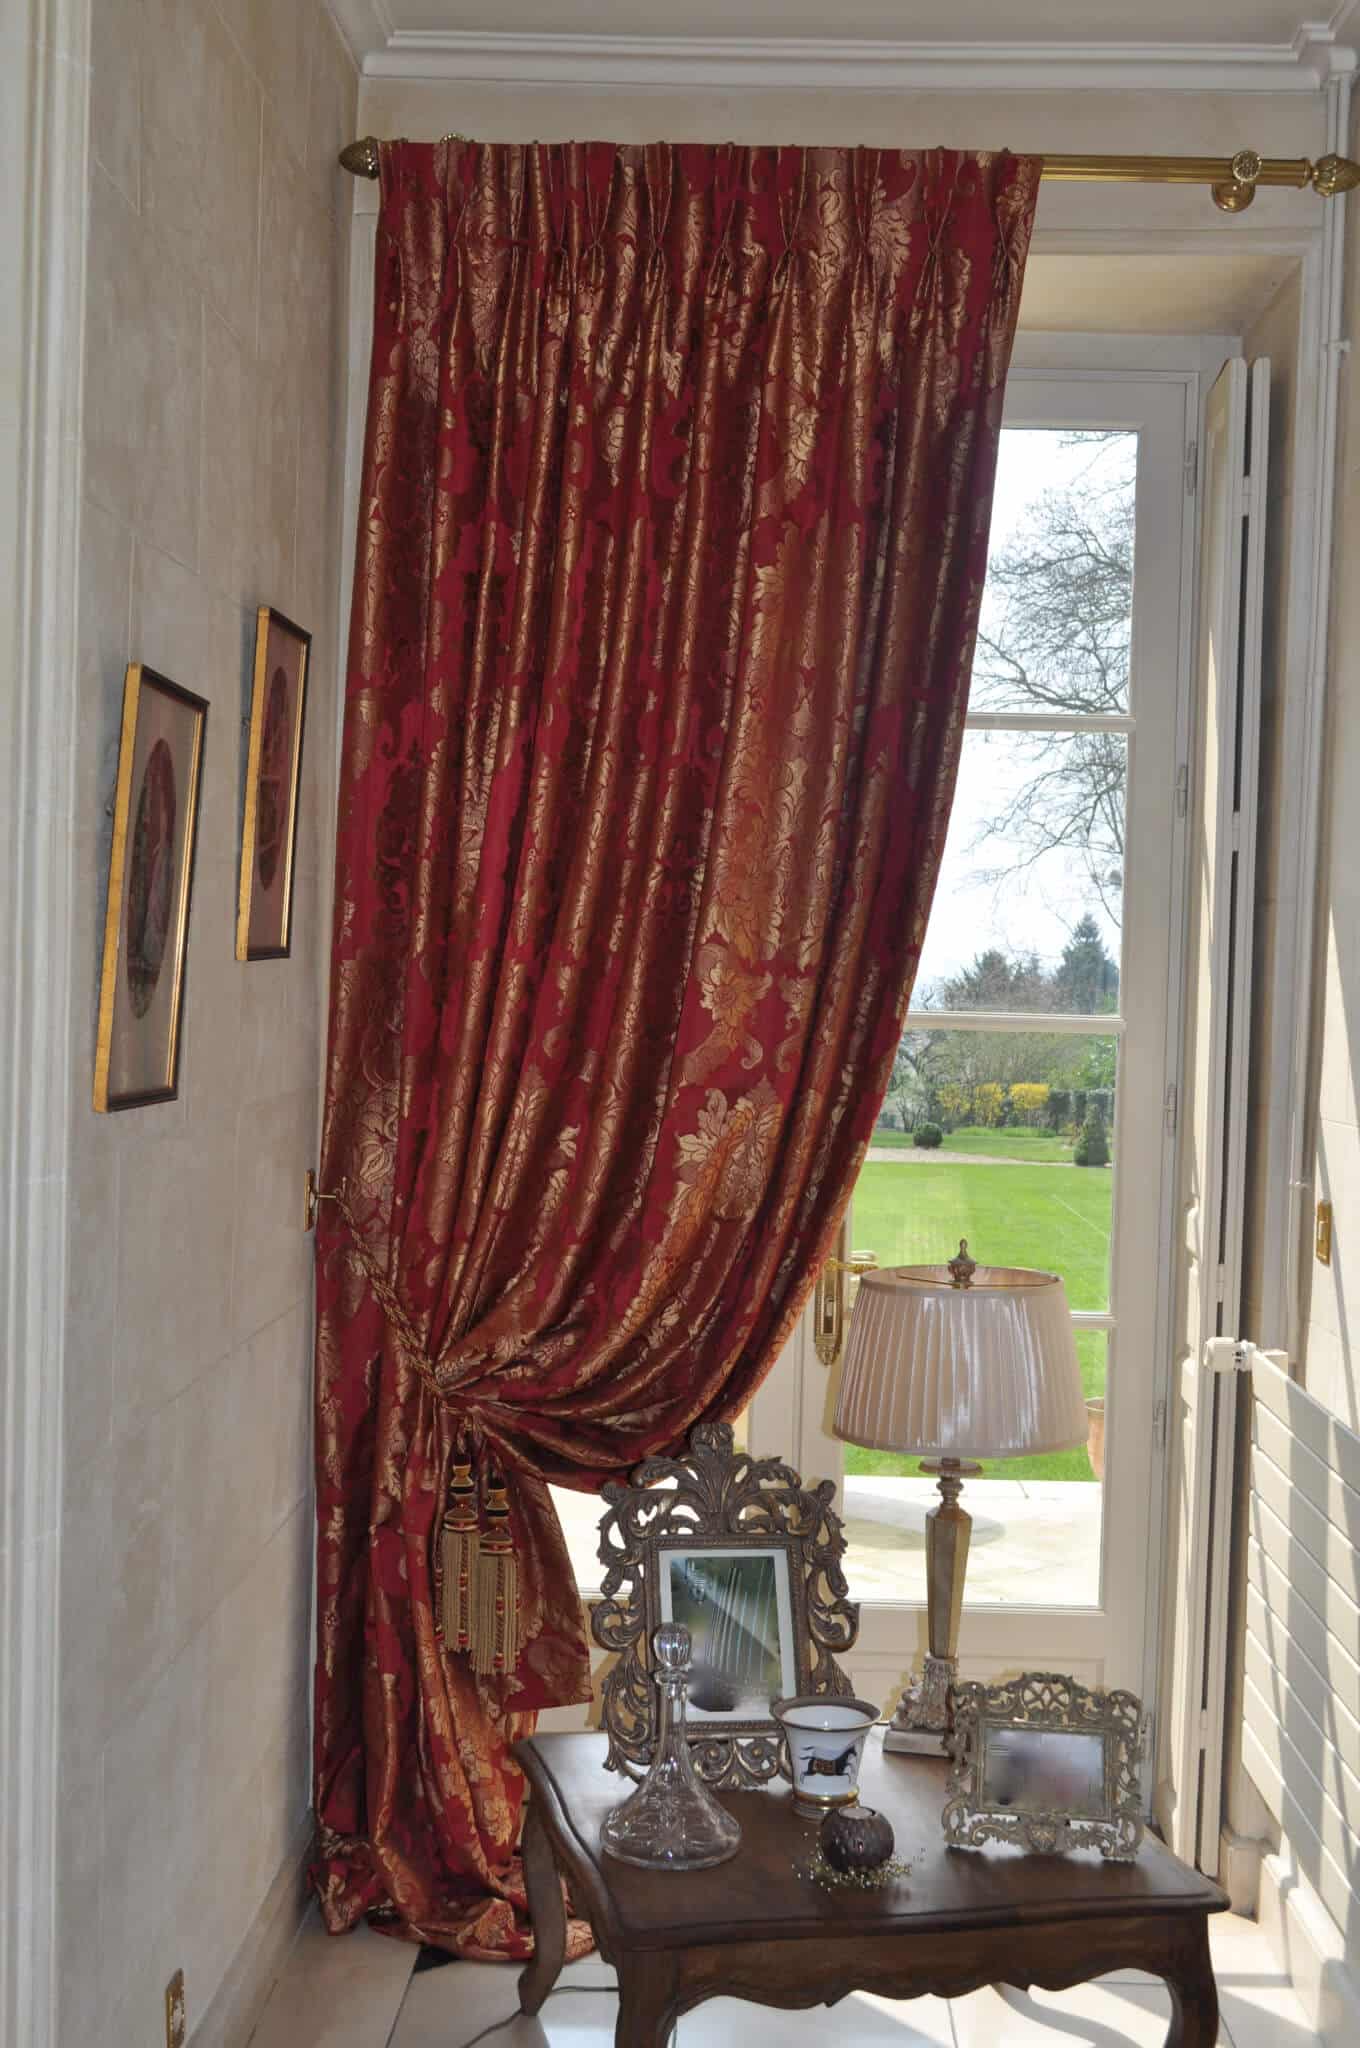 Bon tapissier Paris, confection rideaux de luxe, tissu Rubelli, décor de château